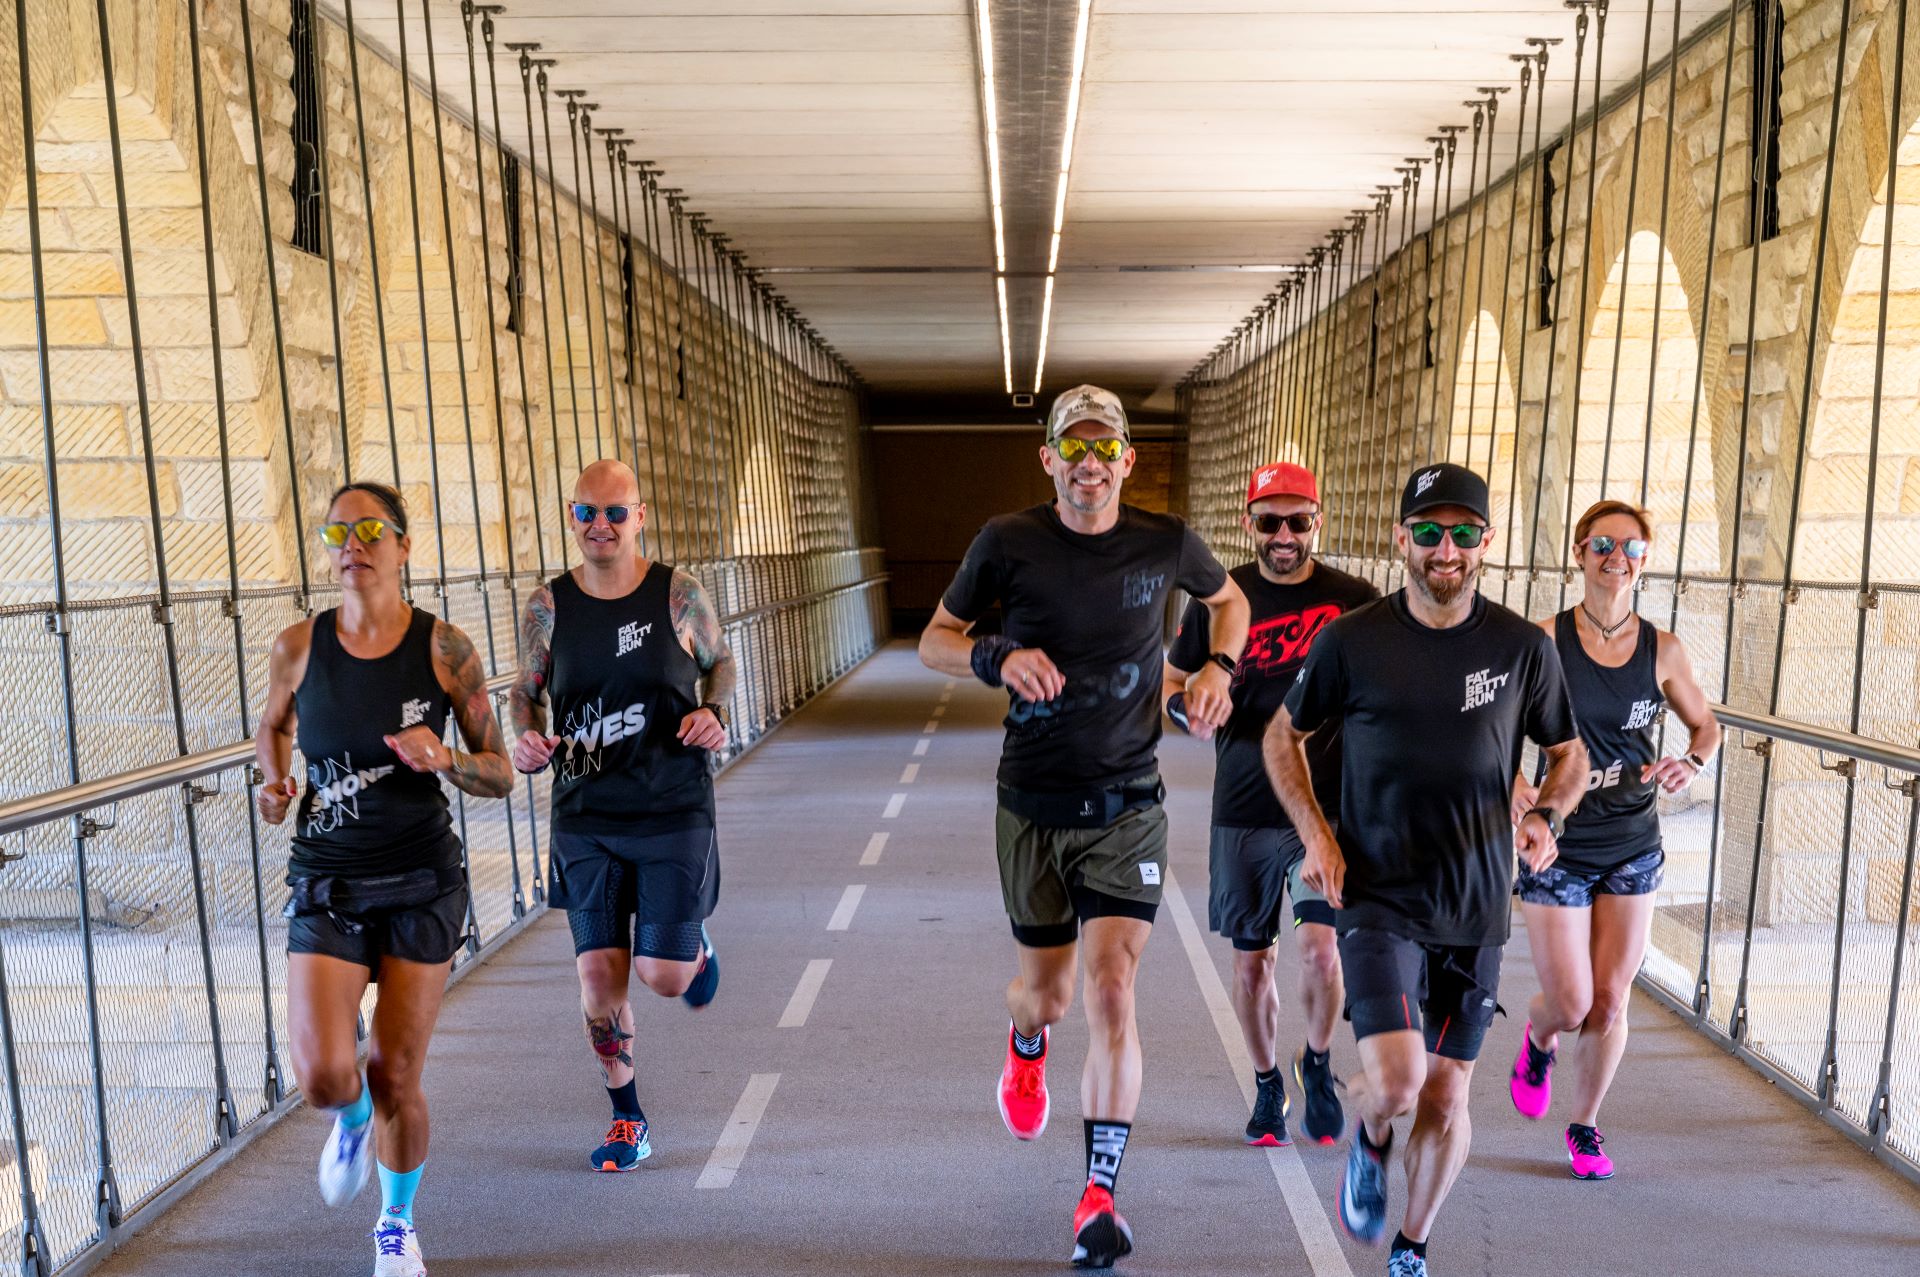 Six membres de l'équipe de FatBetty.run sont visibles sur cette photo d'action. Les coureurs traversent un pont couvert de pierres, portant des vêtements de course sombres, des lunettes de soleil et de grands sourires.